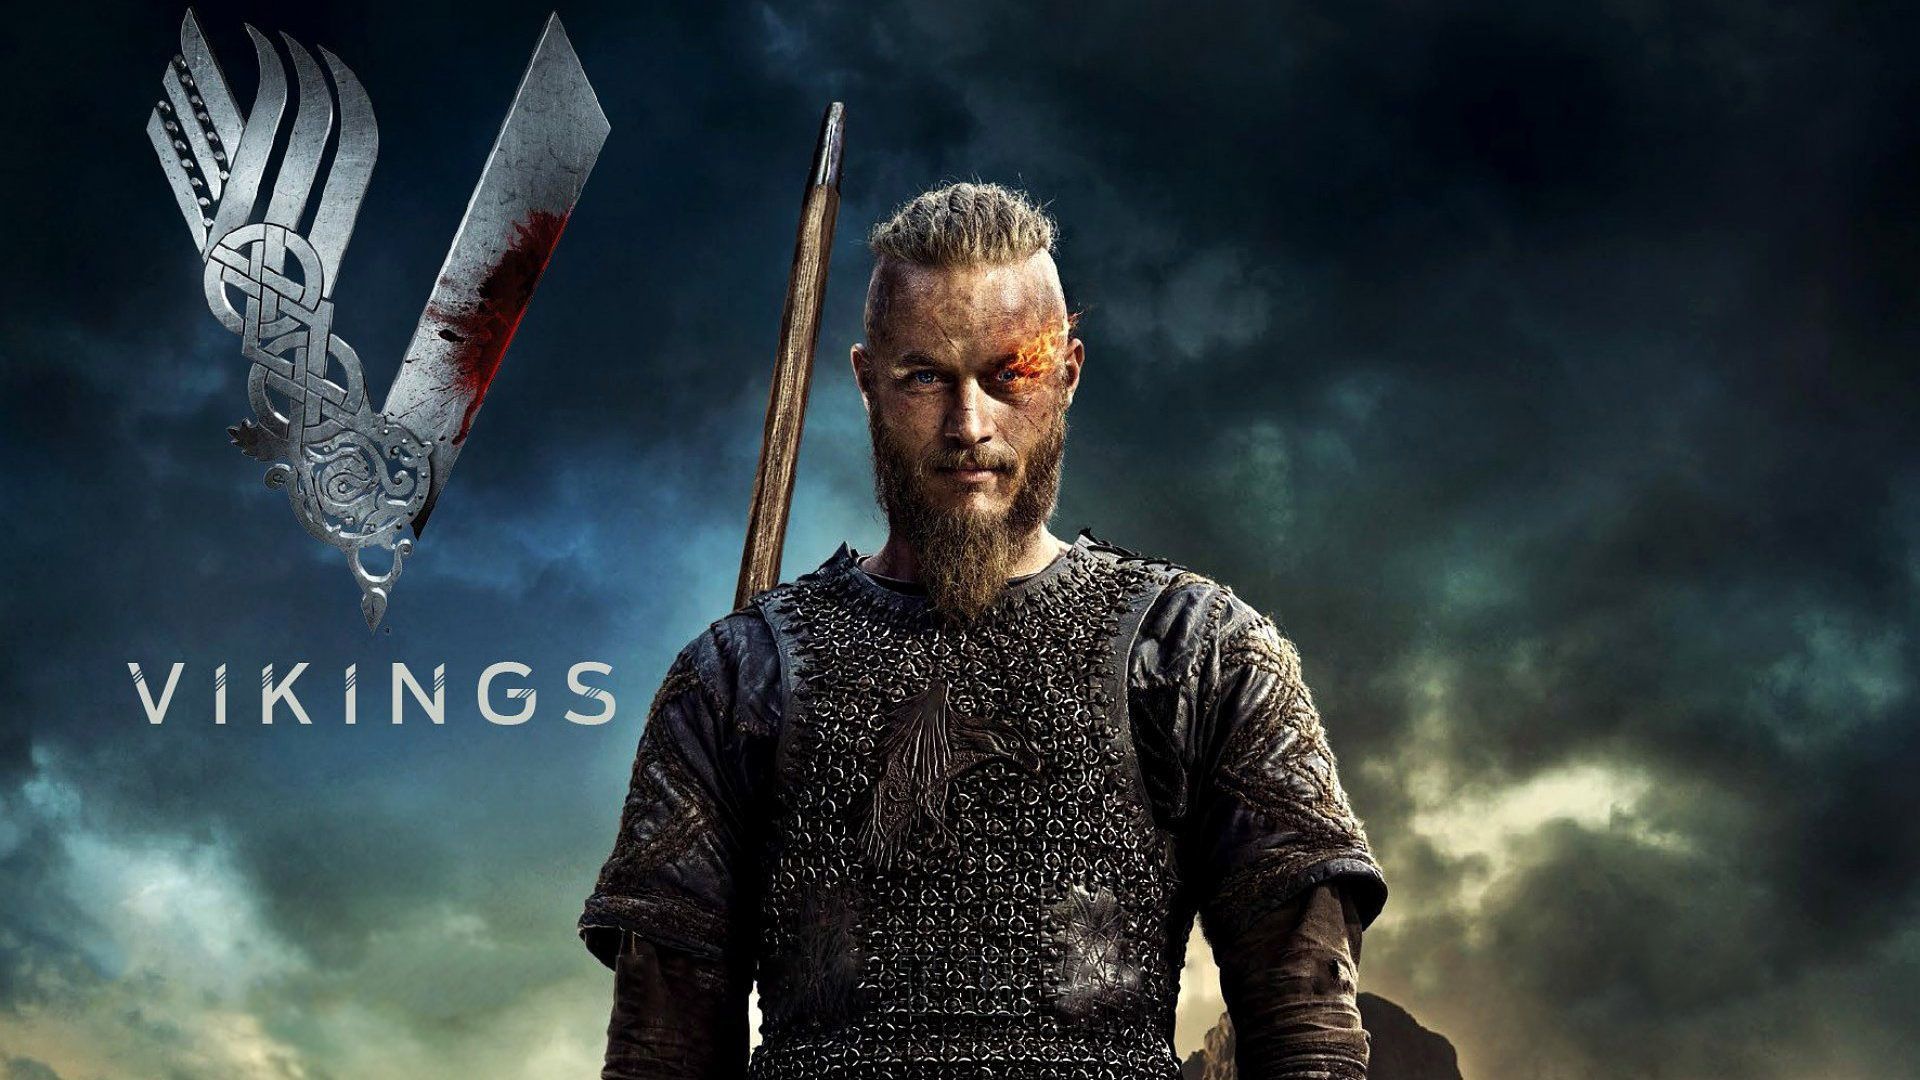 Vikings Wallpapers - Los mejores fondos de Vikings gratis - WallpaperAccess